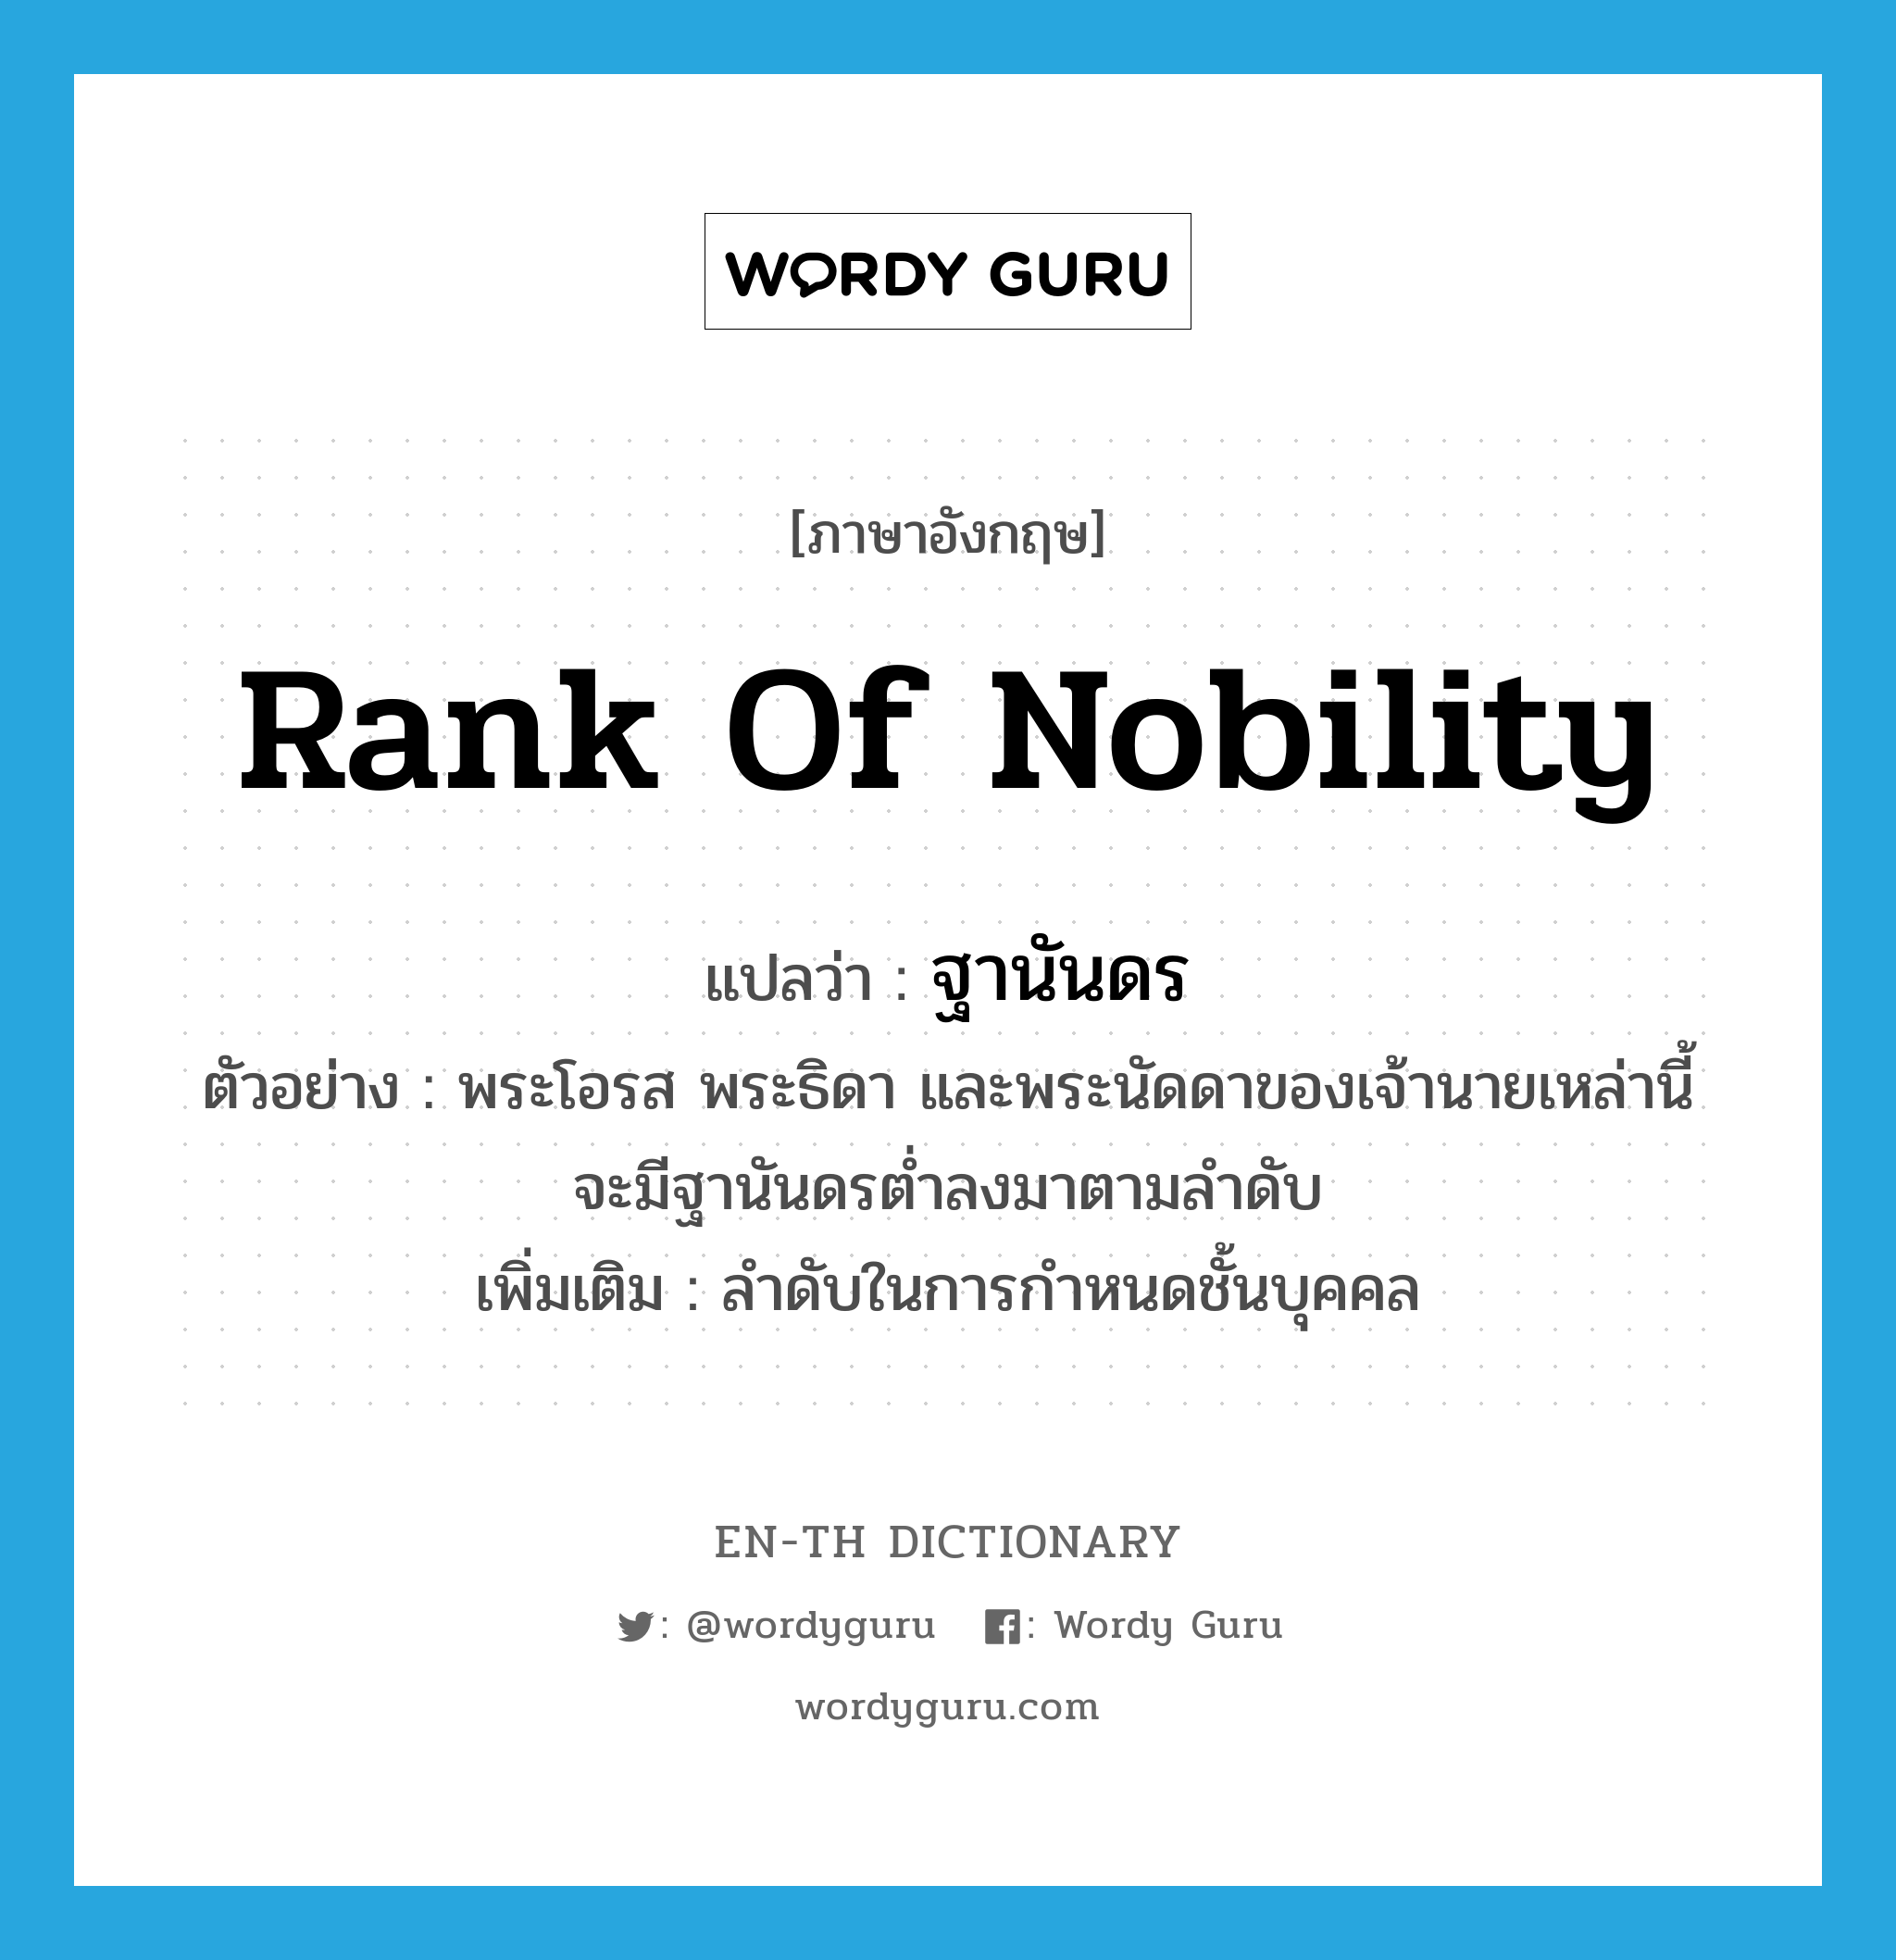 rank of nobility แปลว่า?, คำศัพท์ภาษาอังกฤษ rank of nobility แปลว่า ฐานันดร ประเภท N ตัวอย่าง พระโอรส พระธิดา และพระนัดดาของเจ้านายเหล่านี้ จะมีฐานันดรต่ำลงมาตามลำดับ เพิ่มเติม ลำดับในการกำหนดชั้นบุคคล หมวด N